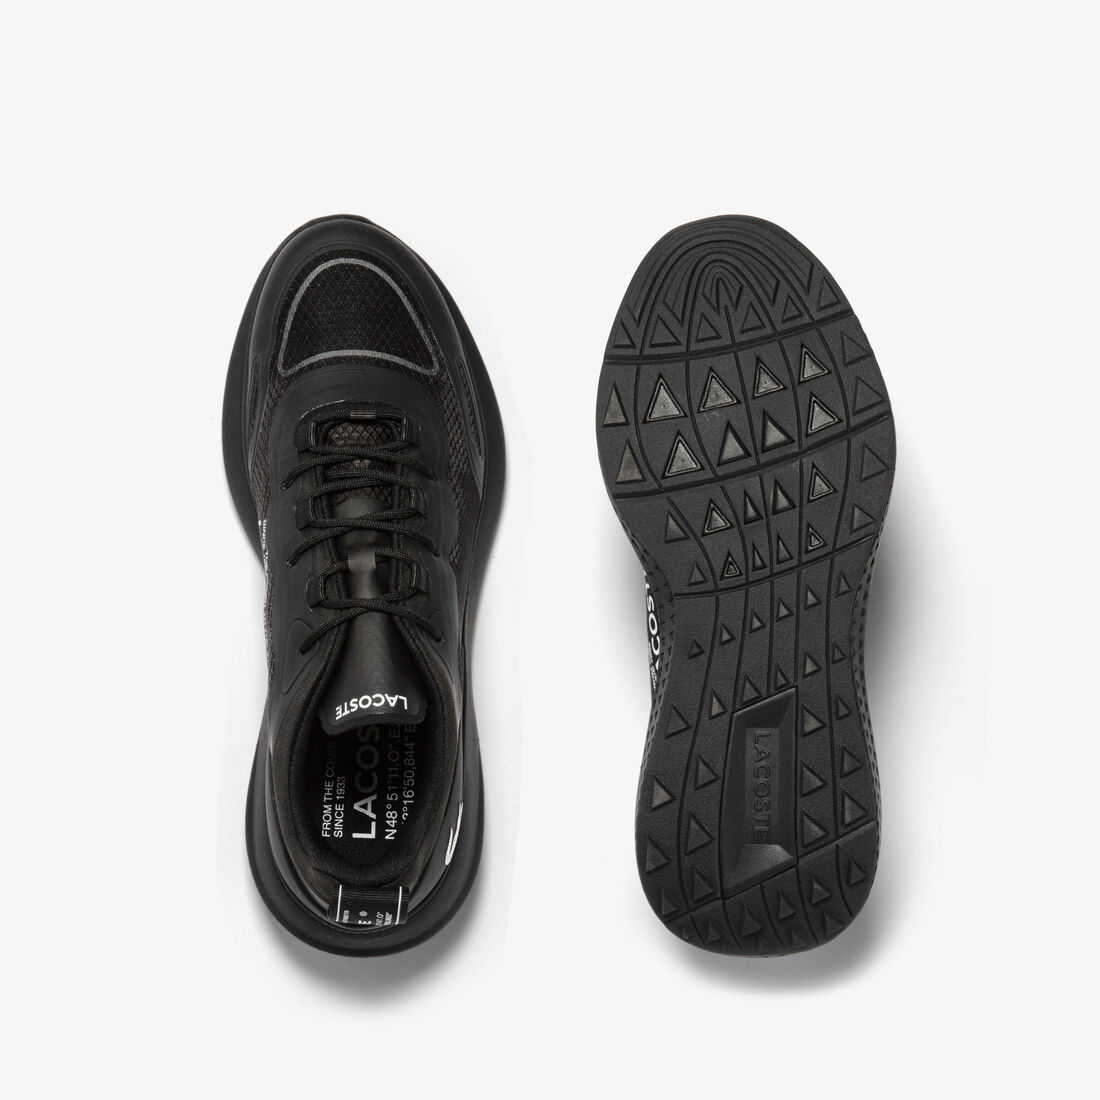 Lacoste Active 4851 Textil Sneakers Herren Schwarz | BDRS-96483